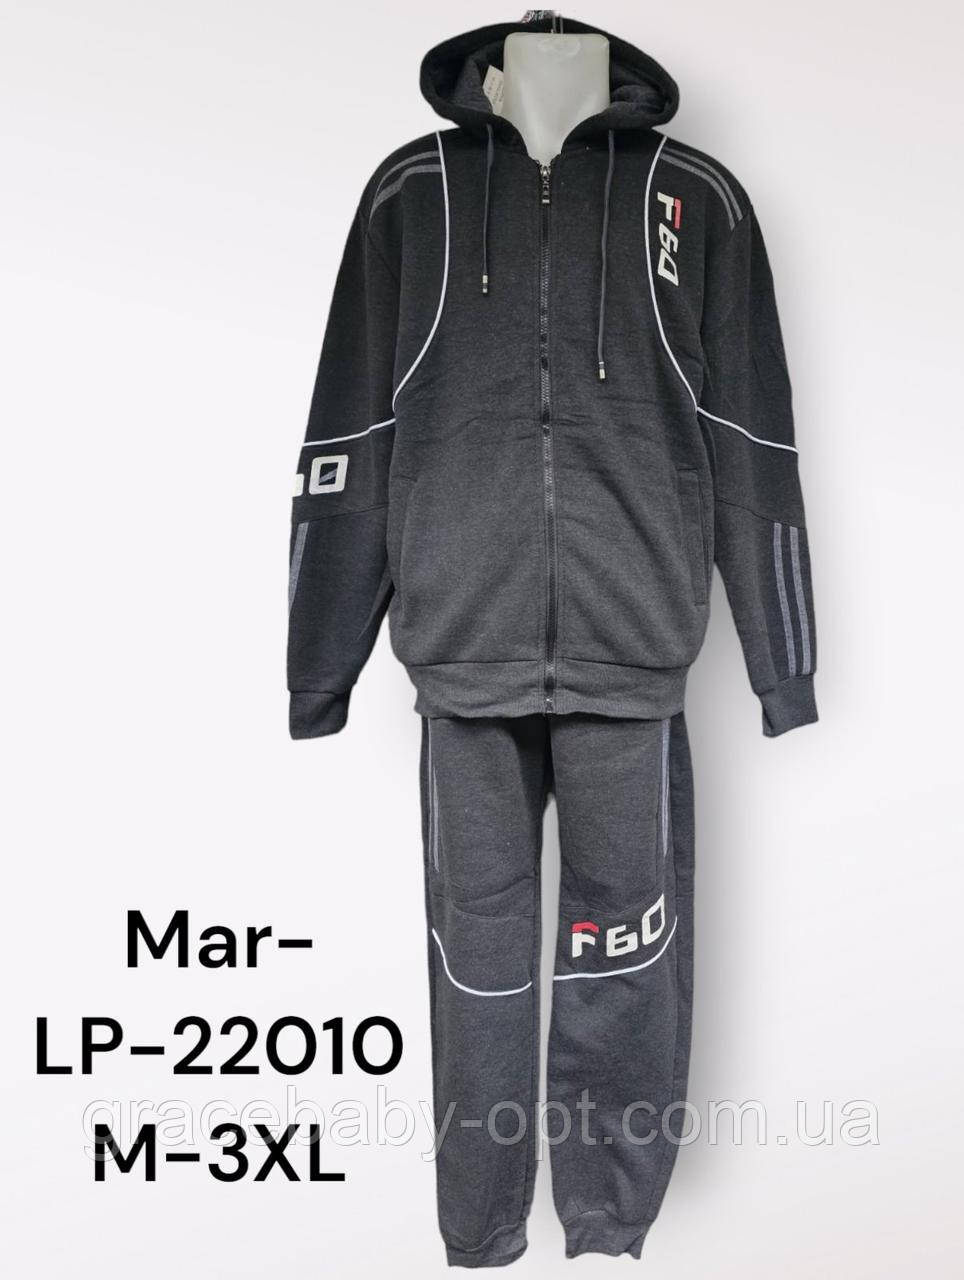 Спортивний костюм 2 в 1 для чоловіків оптом, M-3XL pp, No Mar-LP-22010